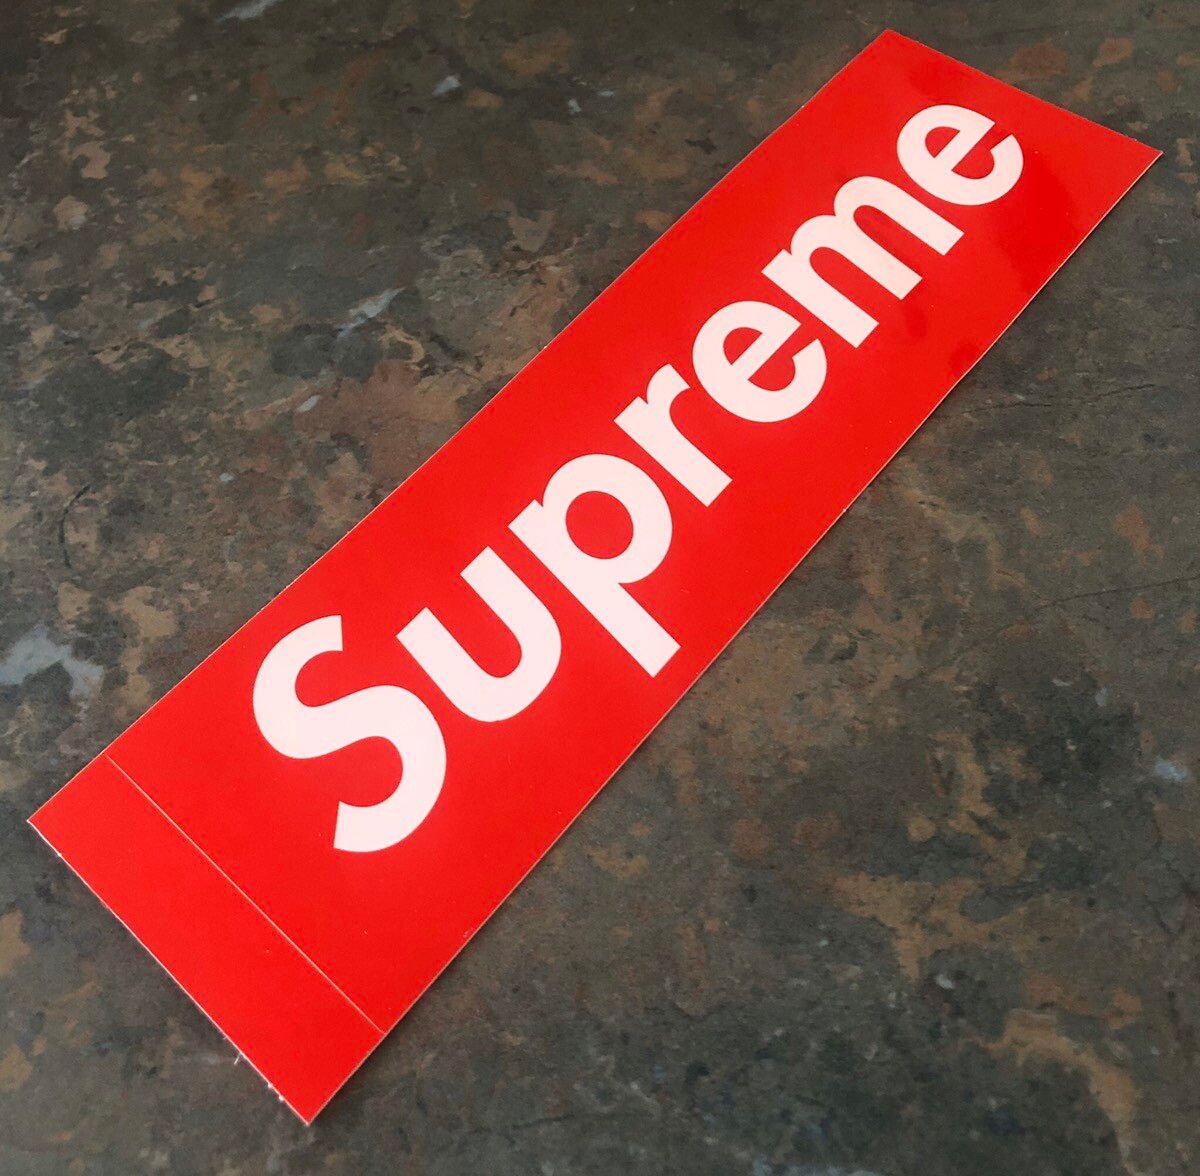 Supreme Supreme Red Box Logo Sticker Size ONE SIZE - 1 Preview